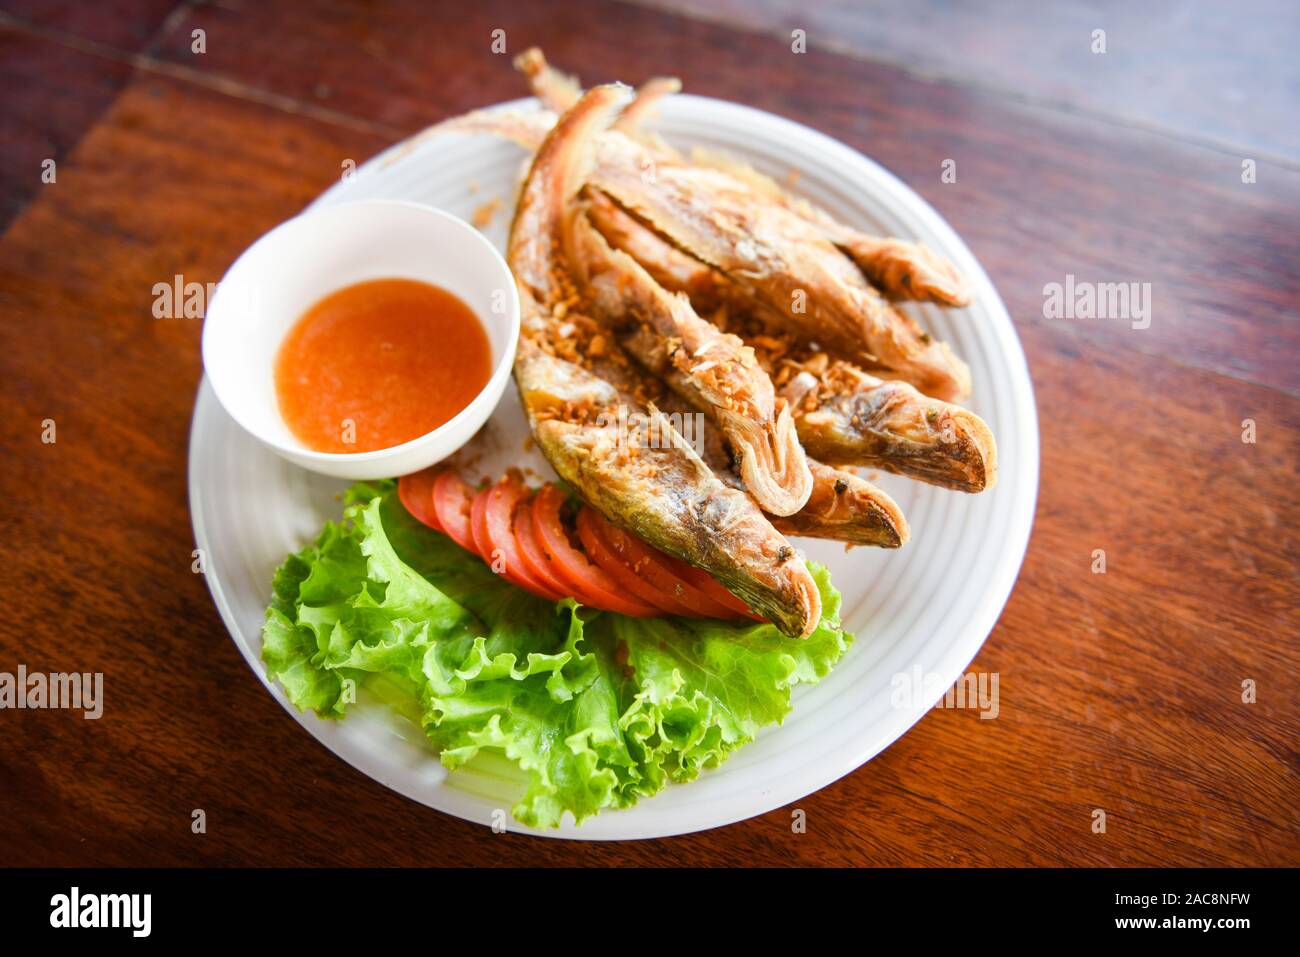 Gebratener Fisch mit Gemüse Salat Tomaten und Soße auf weiße Platte Holztisch - süßwasserfische Mekong Andere Namen Sheatfishes Siluriformes Silur Stockfoto